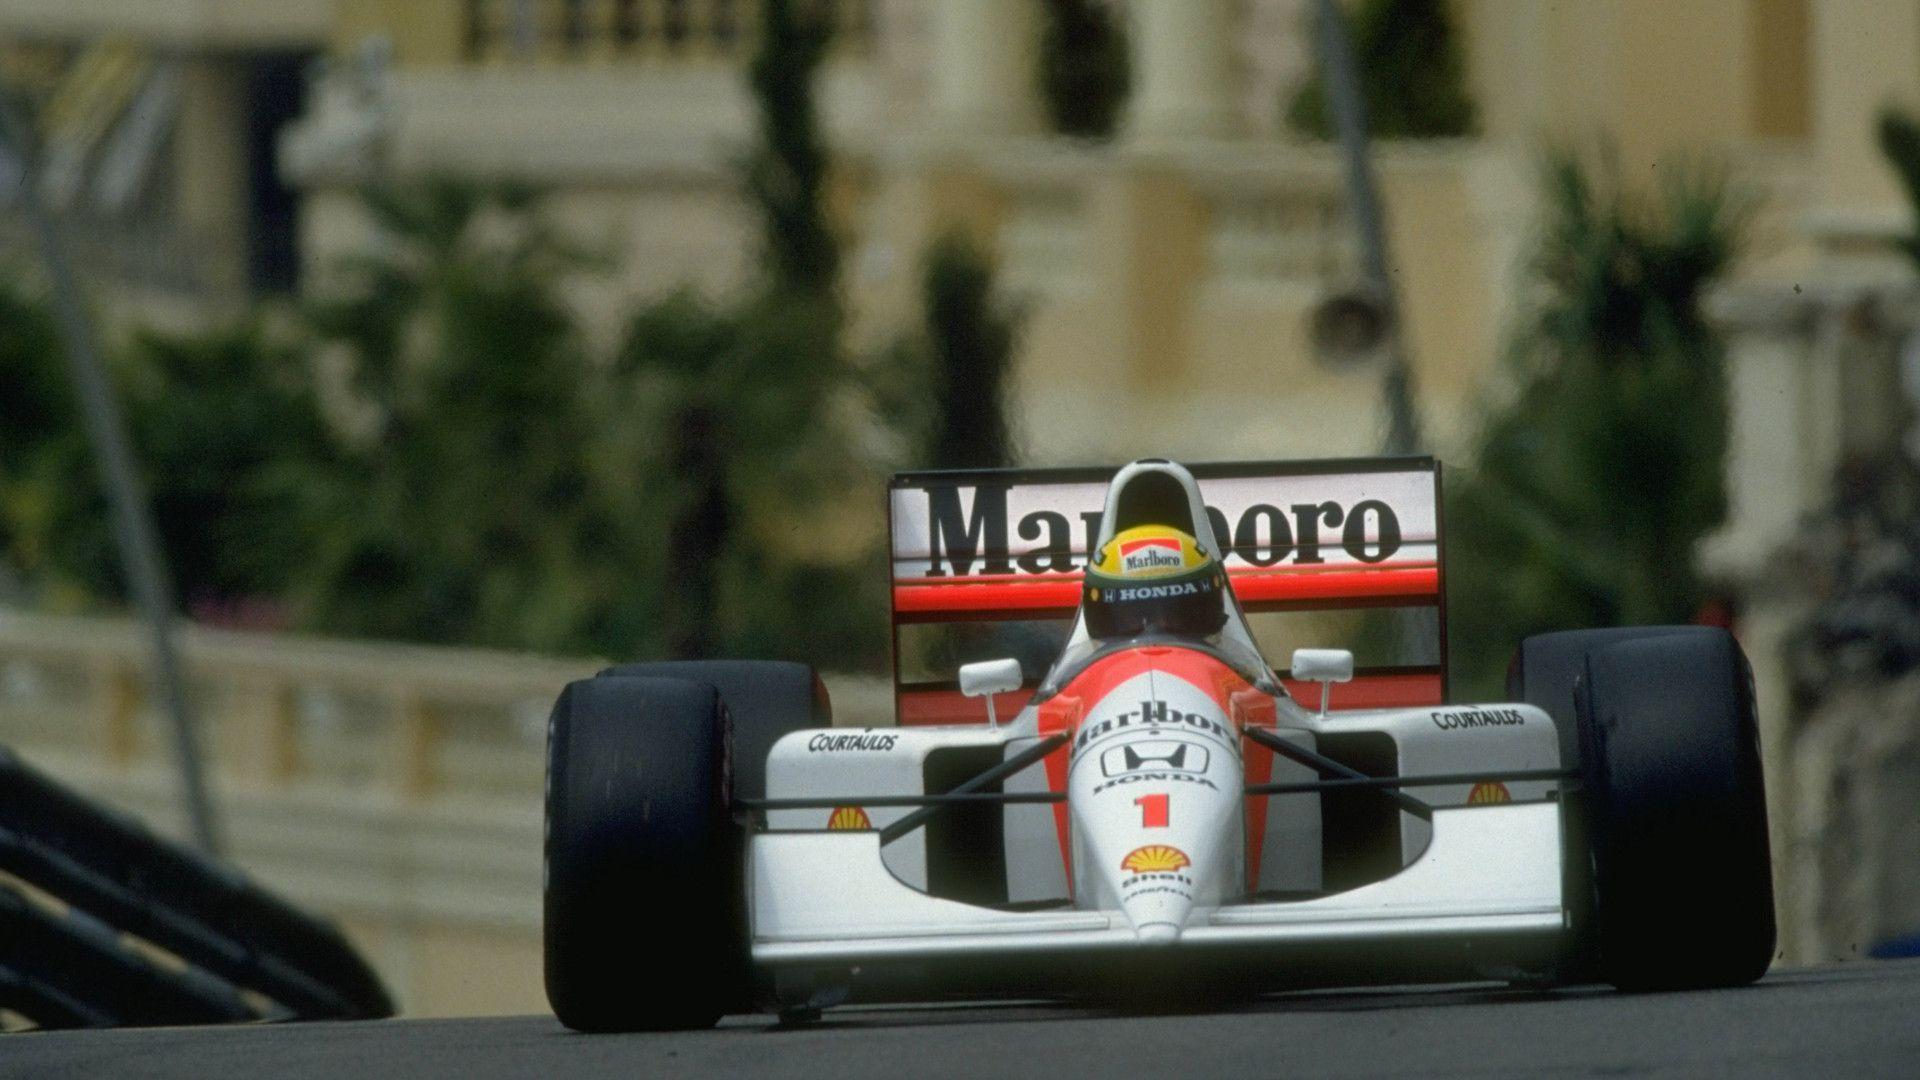 Senna Monaco wallpaper